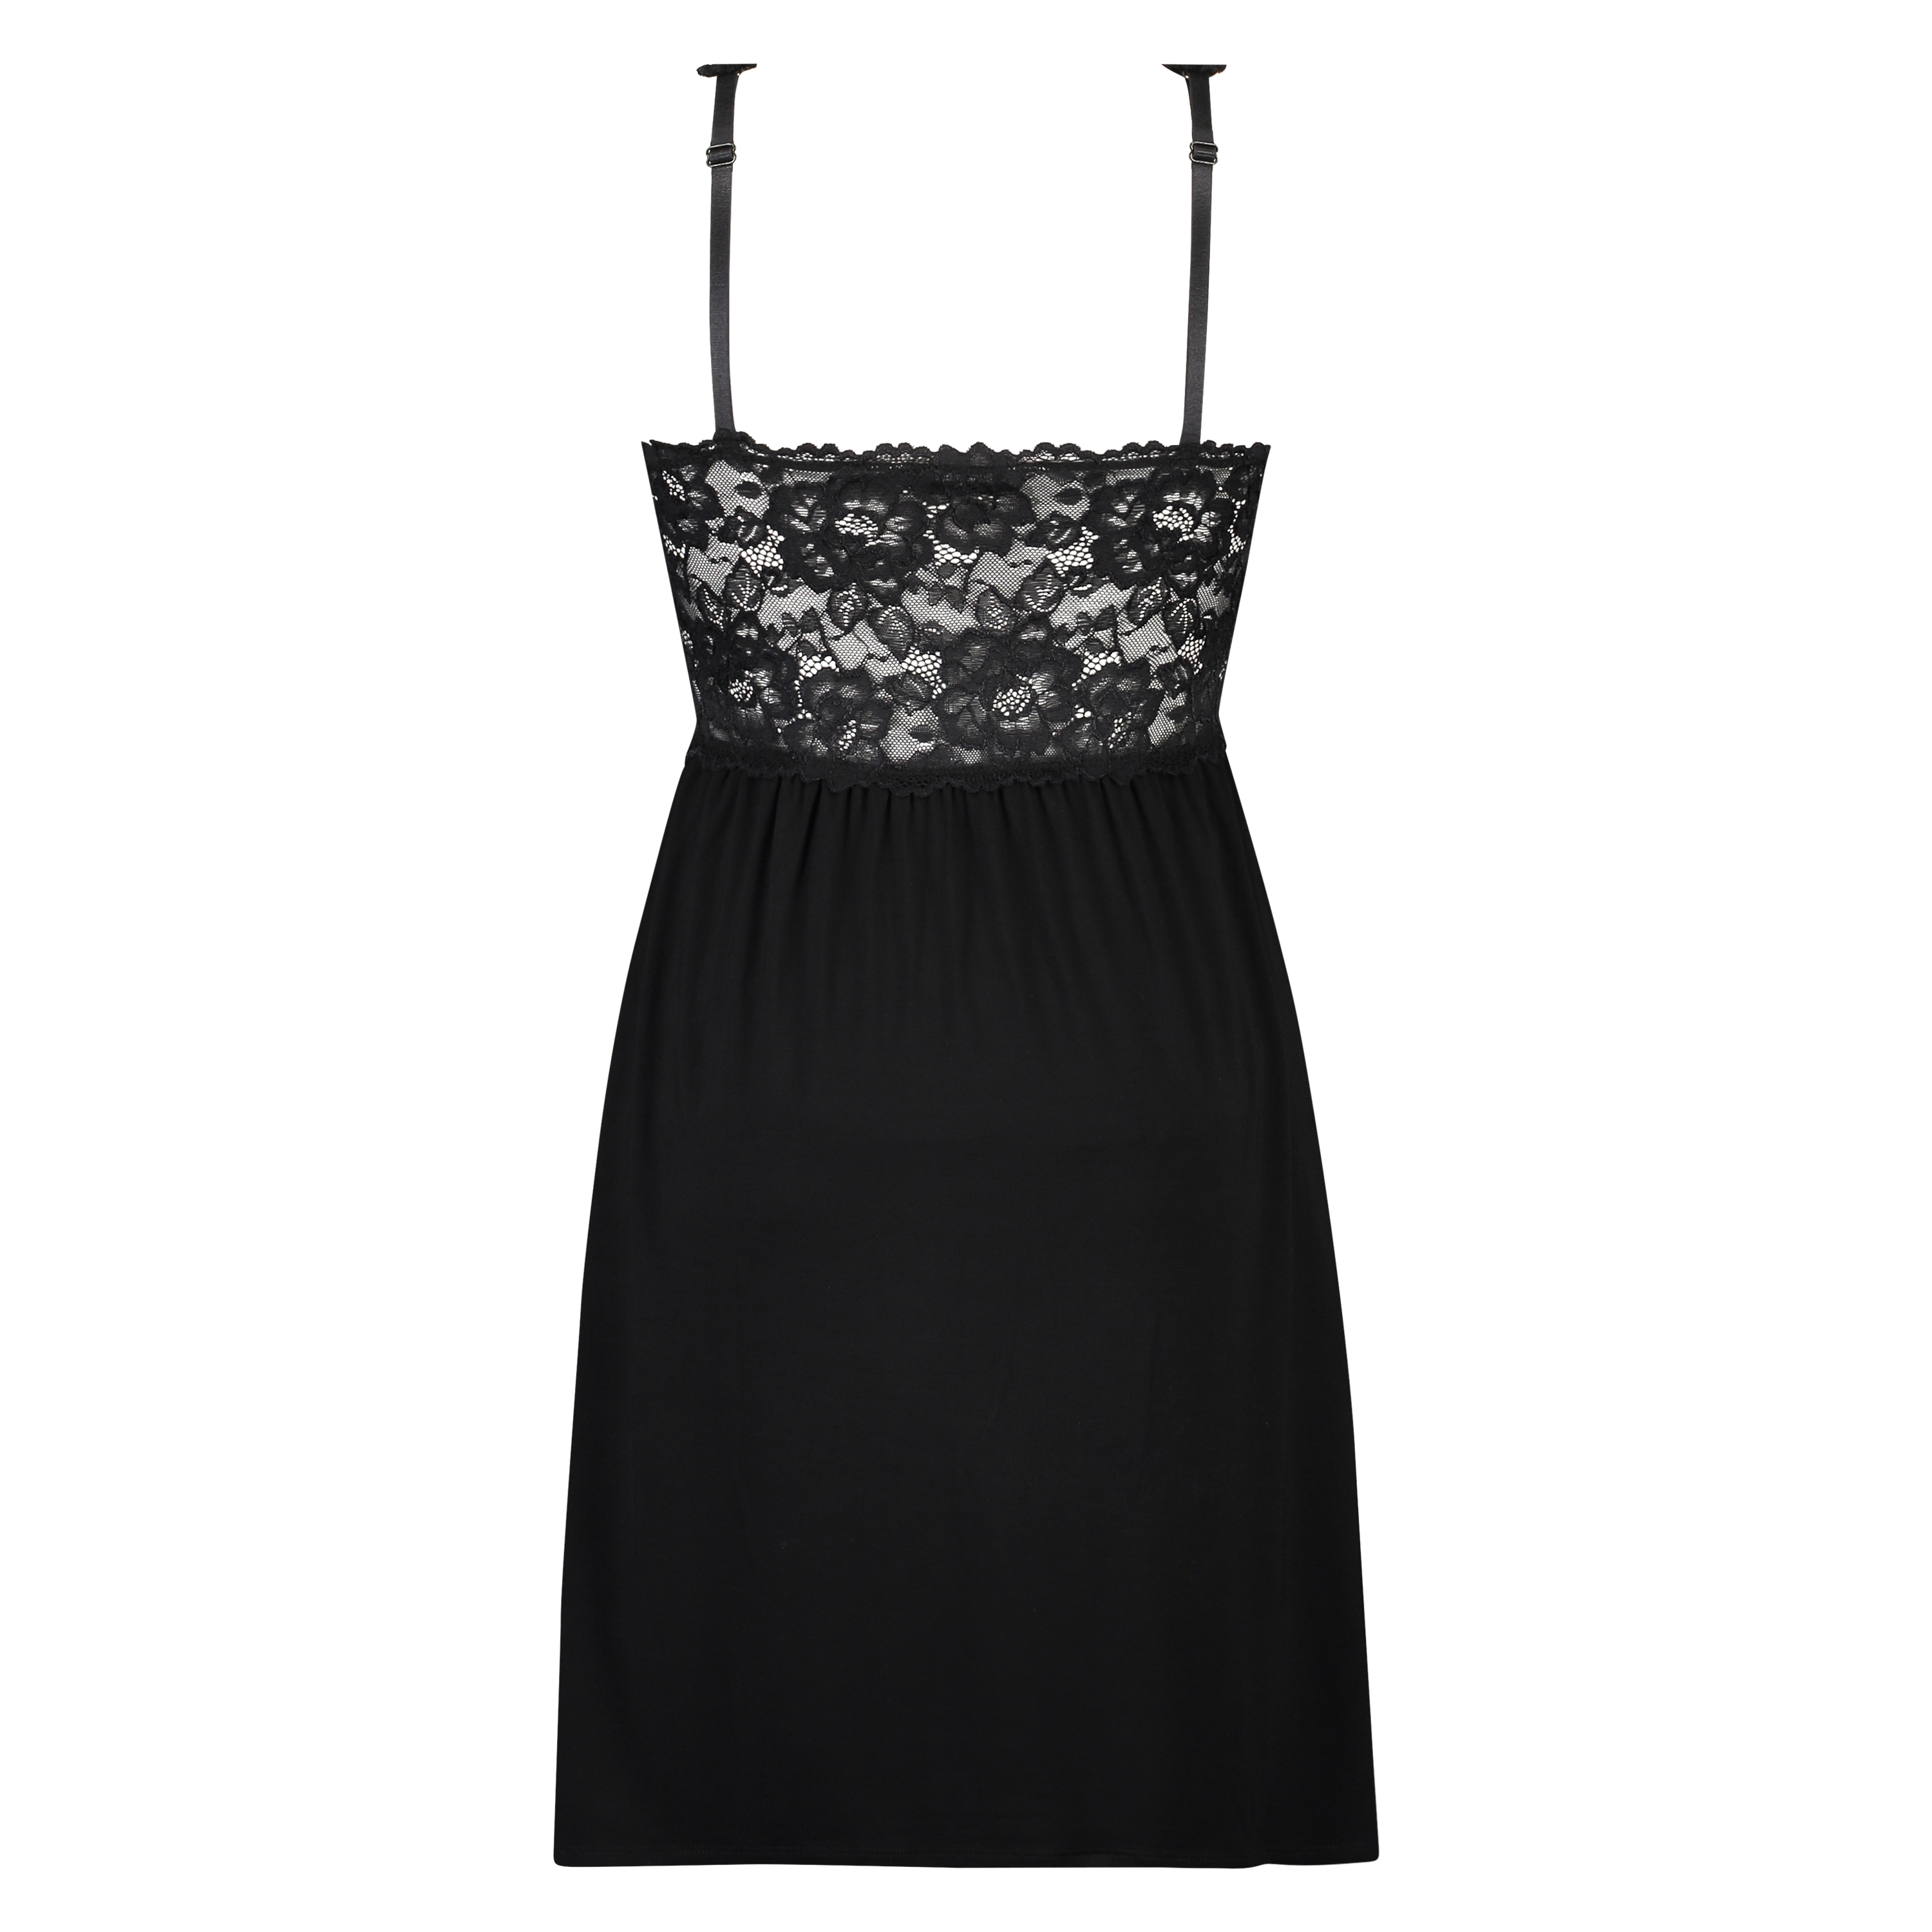 Modal Lace Slip Dress for £25 - Slipdresses & Babydolls - Hunkemöller